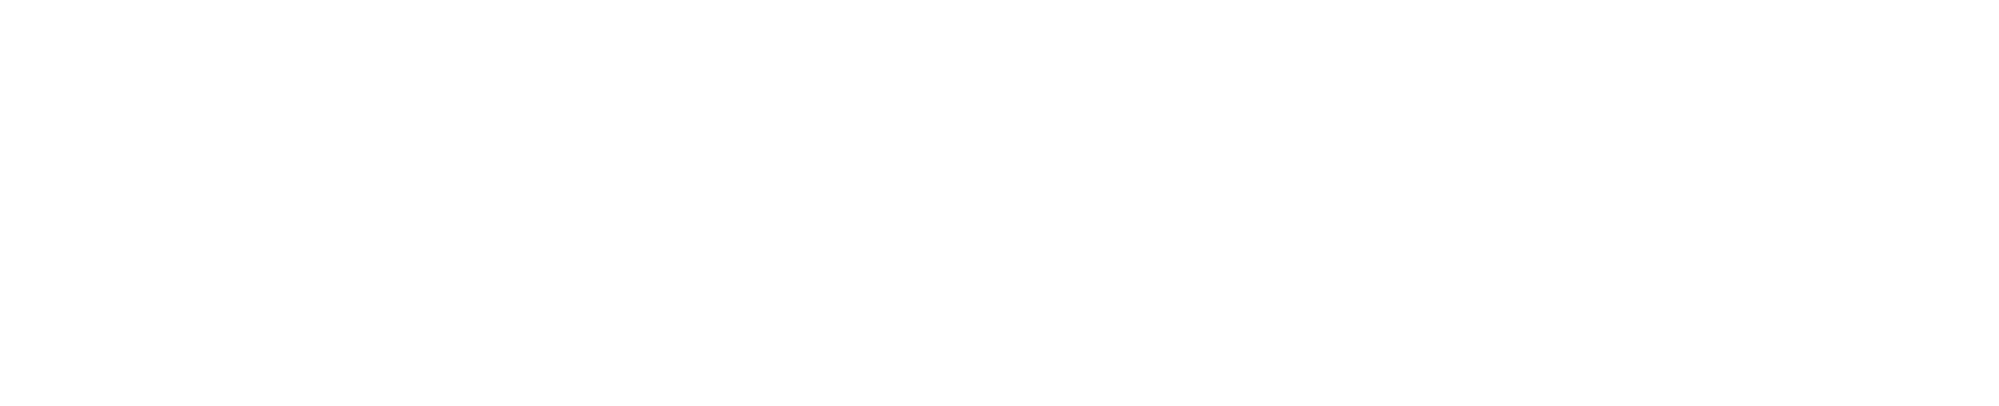 Logotipo da Abercrombie & Fitch